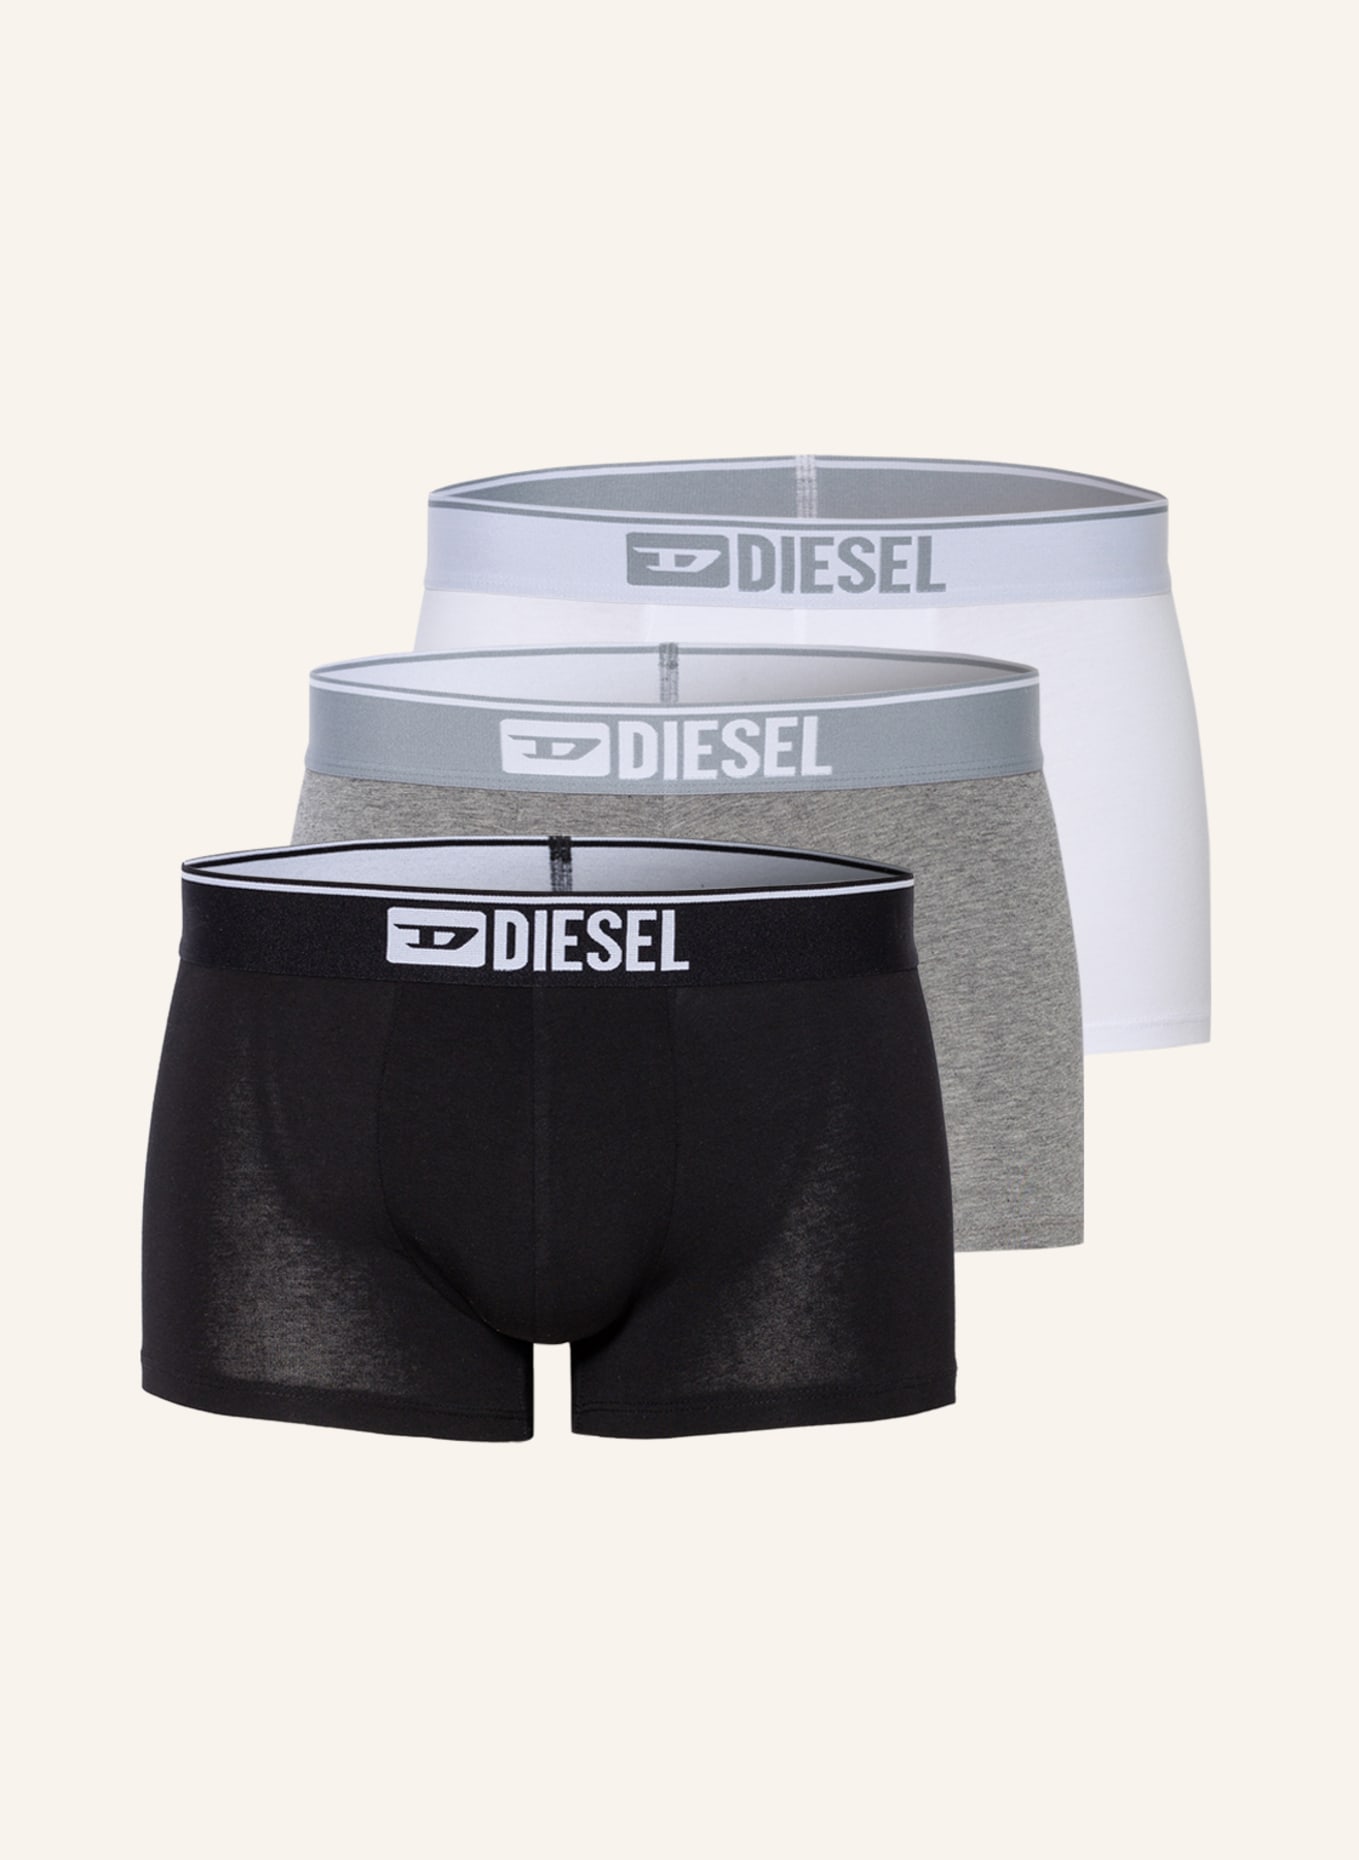 DIESEL 3er-Pack Boxershorts DAMIEN, Farbe: WEISS/ SCHWARZ/ GRAU (Bild 1)